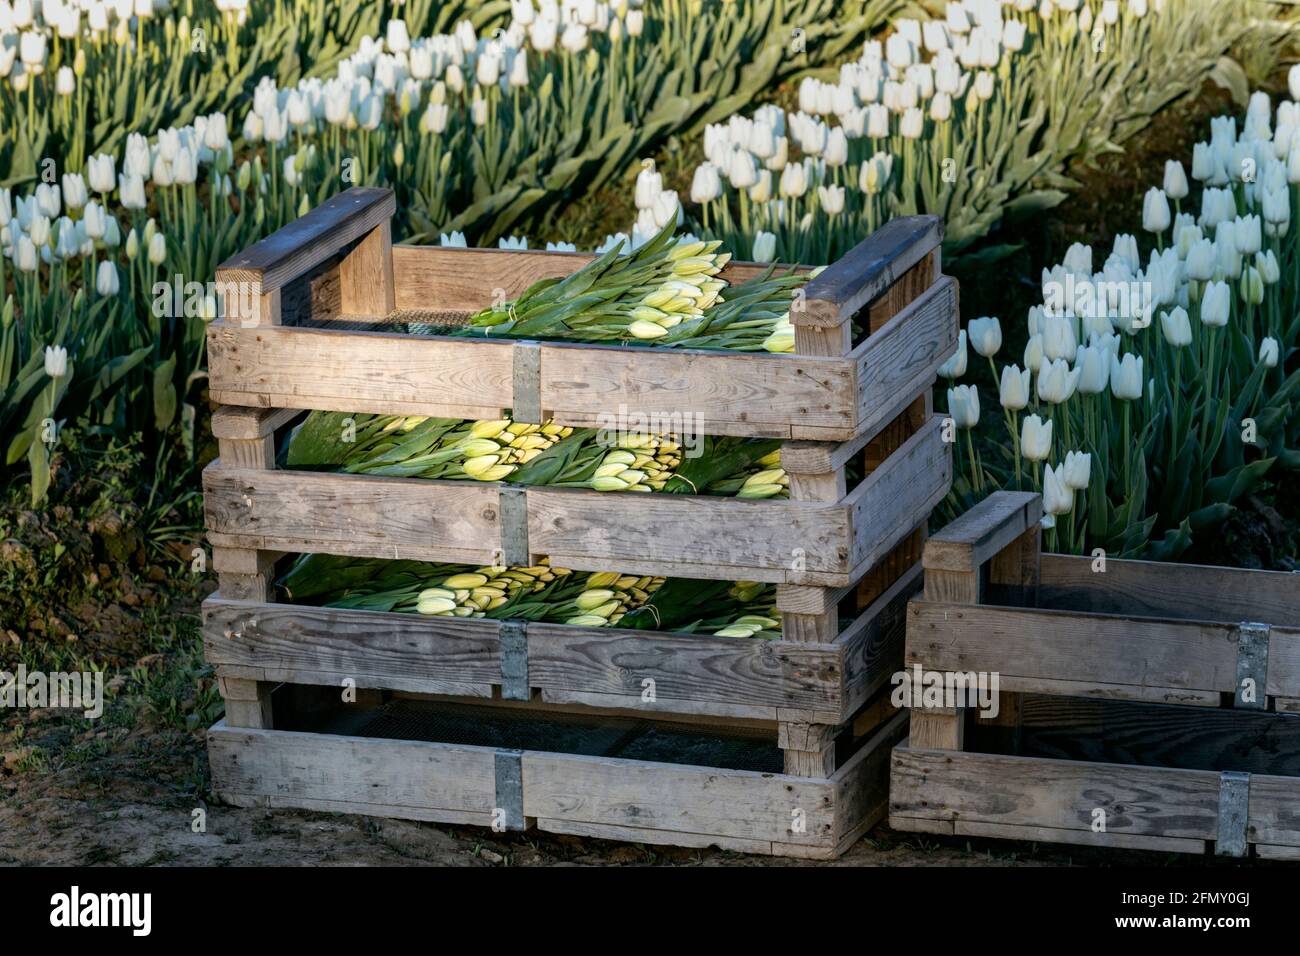 WA20184-00....WASHINGTON - frisch geschnittene Tulpen im Skagit Valley verpackt und bereit zum Abholen. Stockfoto